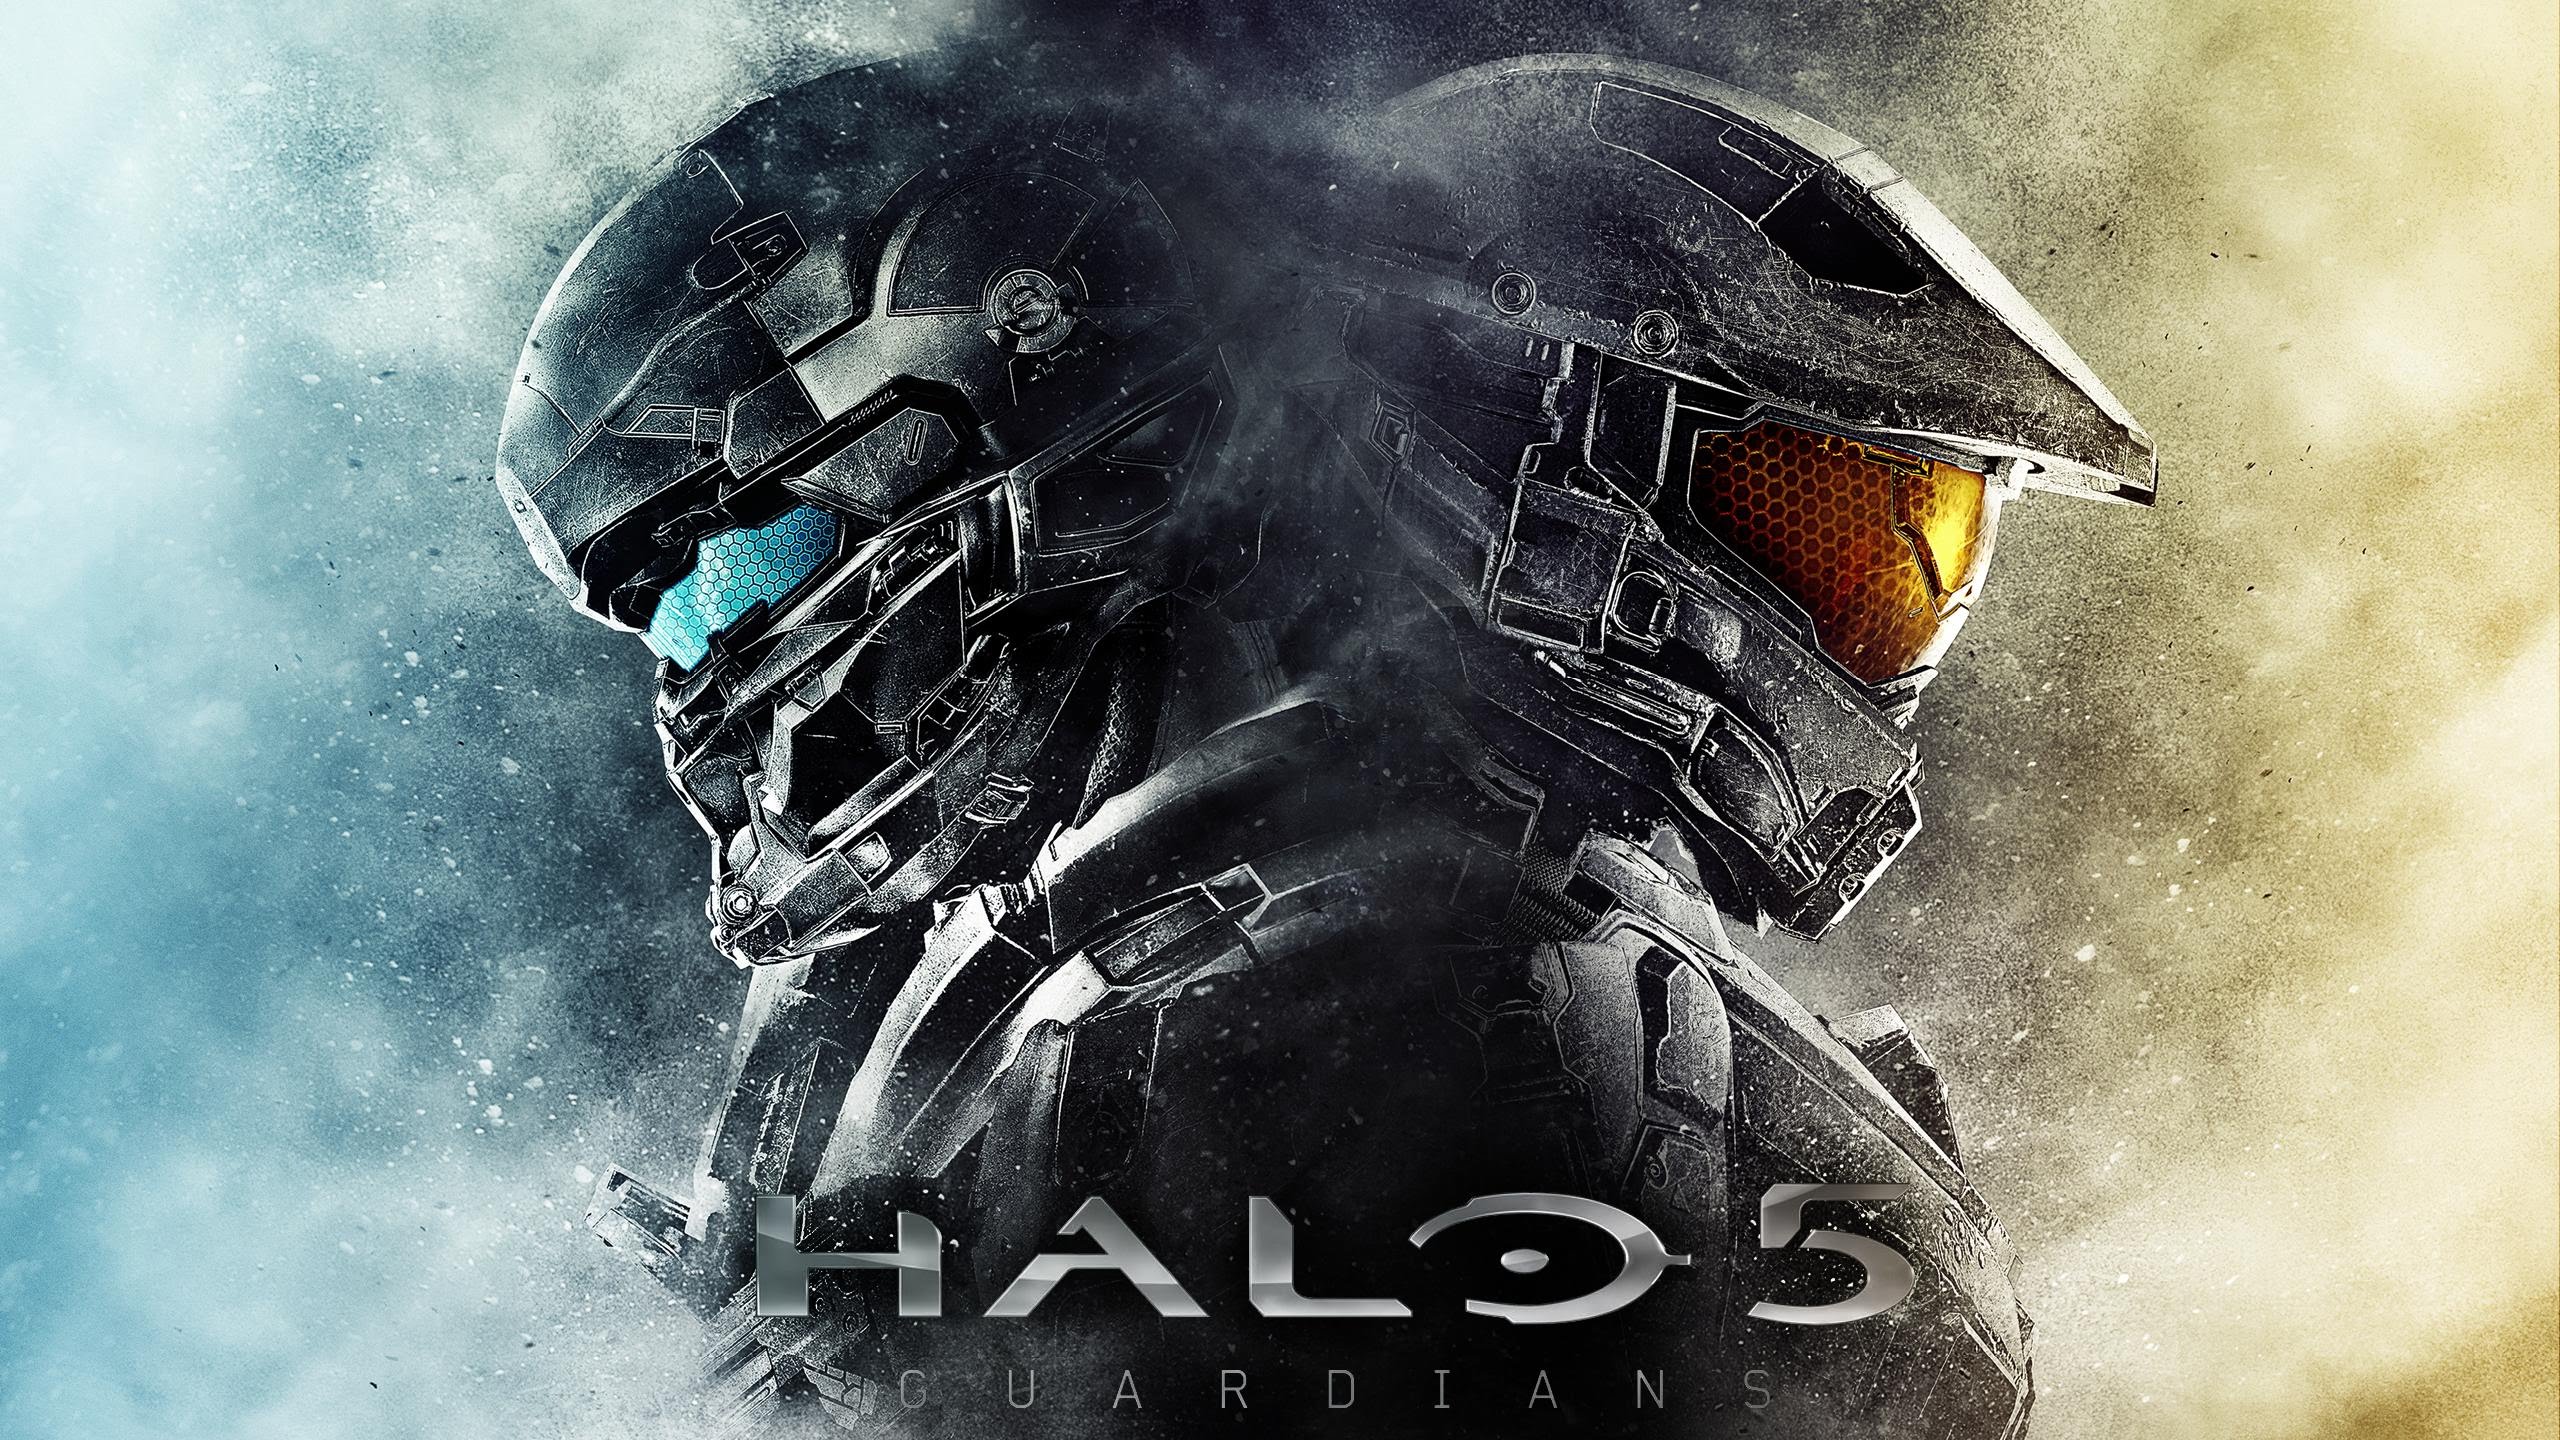 Halo 5: Guardians Backgrounds, Compatible - PC, Mobile, Gadgets| 2560x1440 px